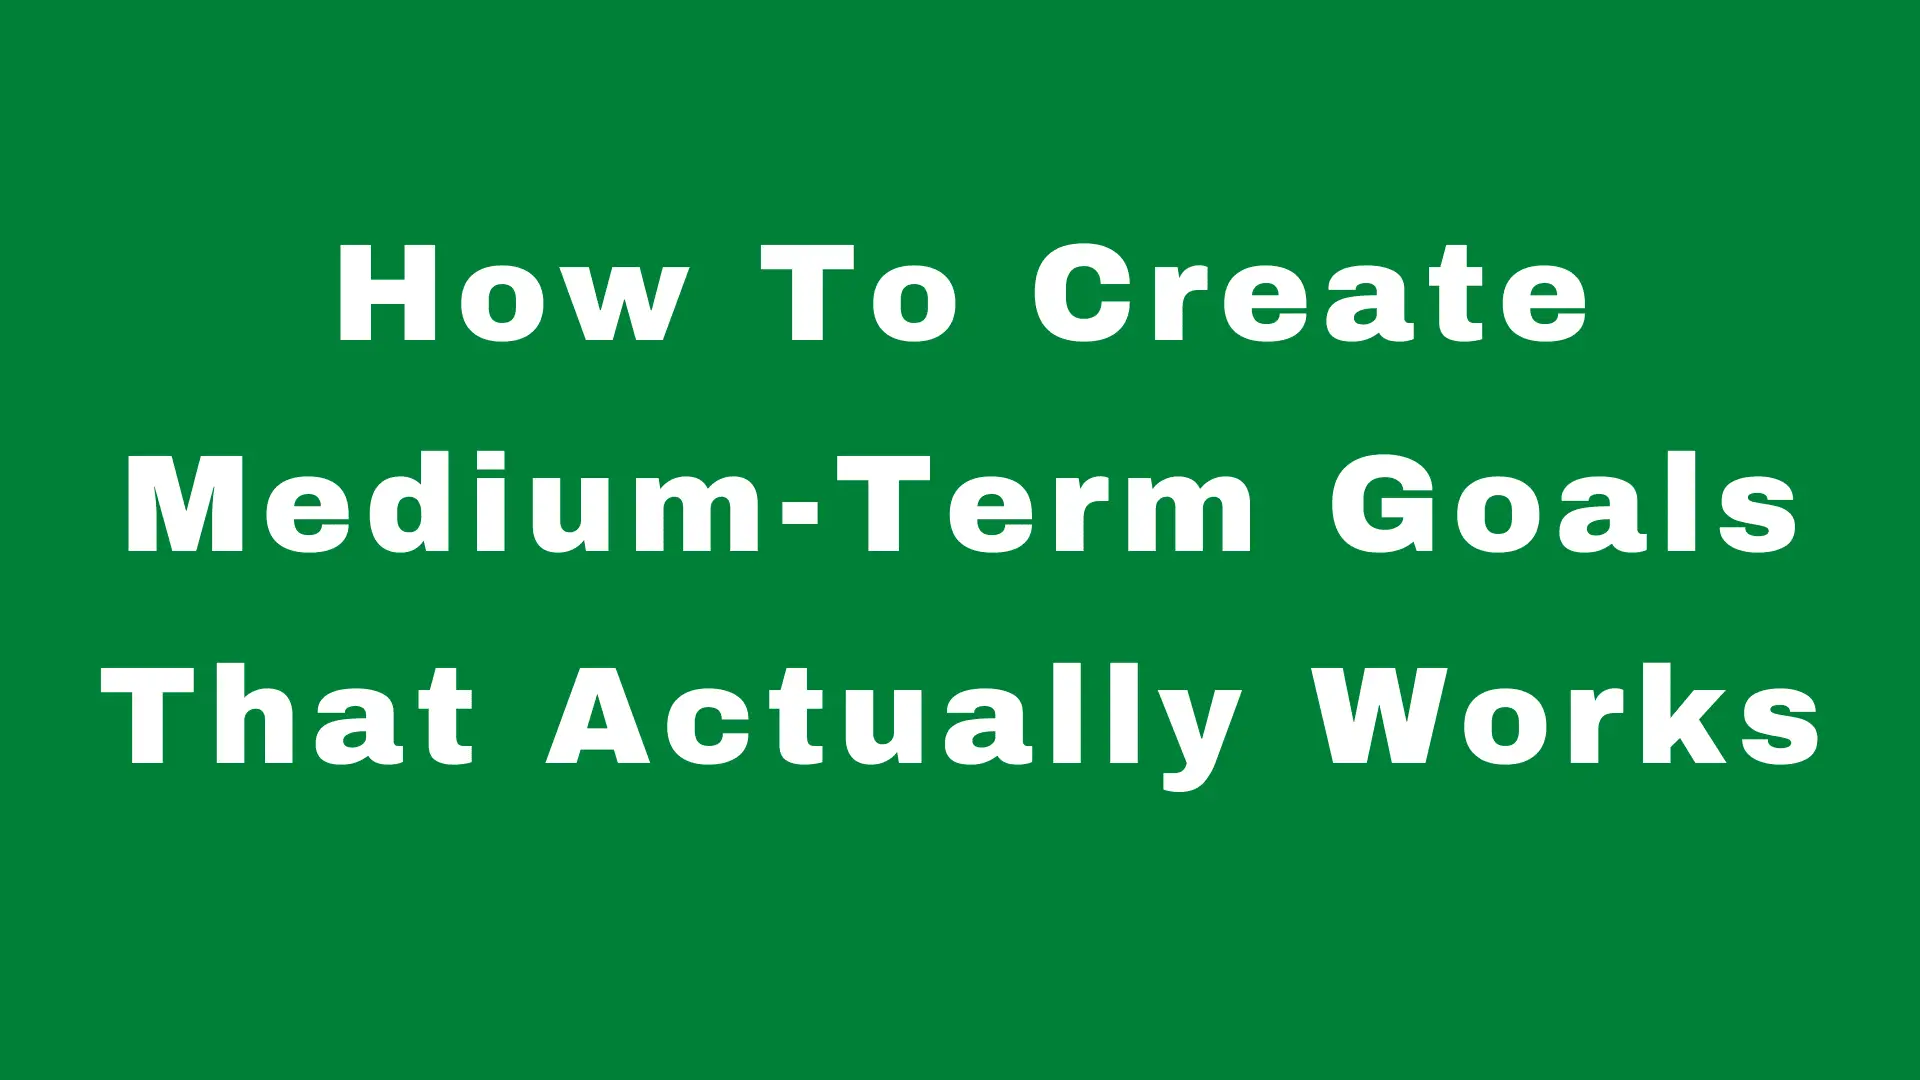 How To Create Medium-Term Goals